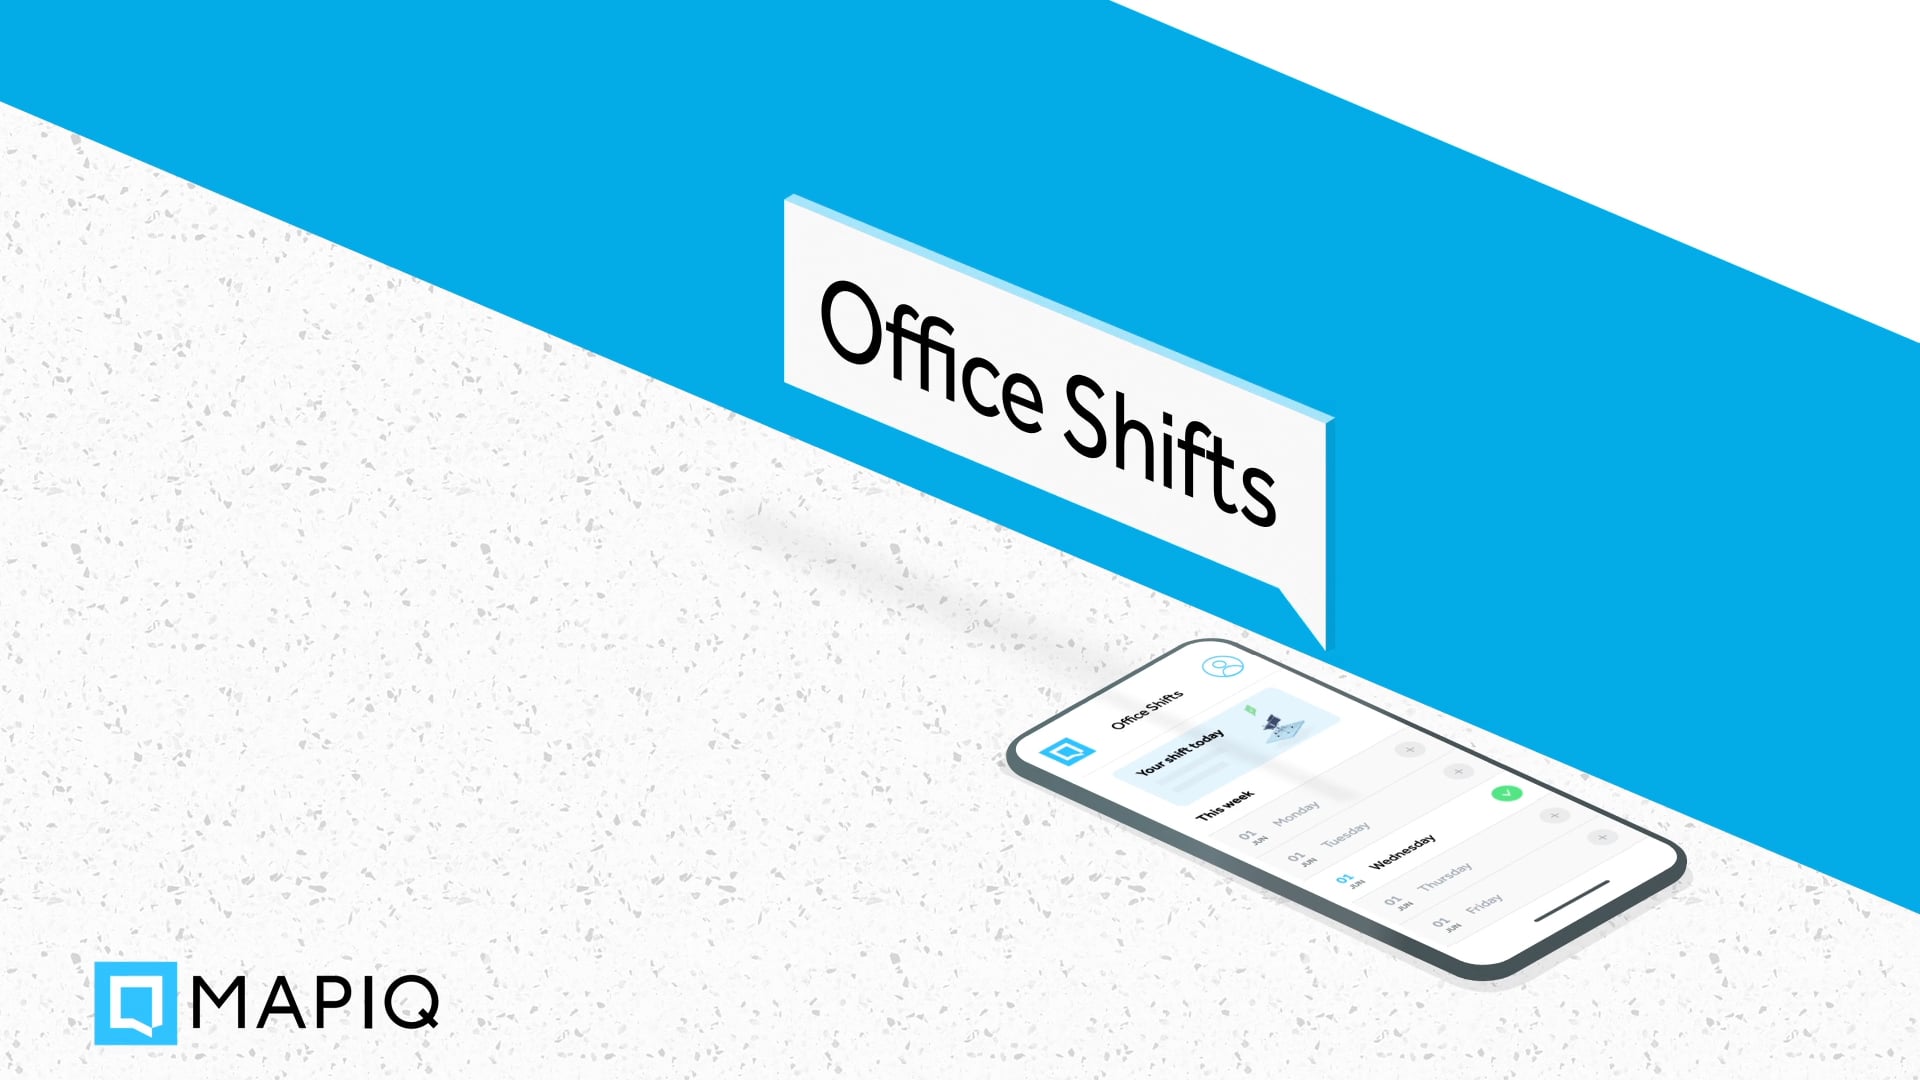 Mapiq | Office Shifts